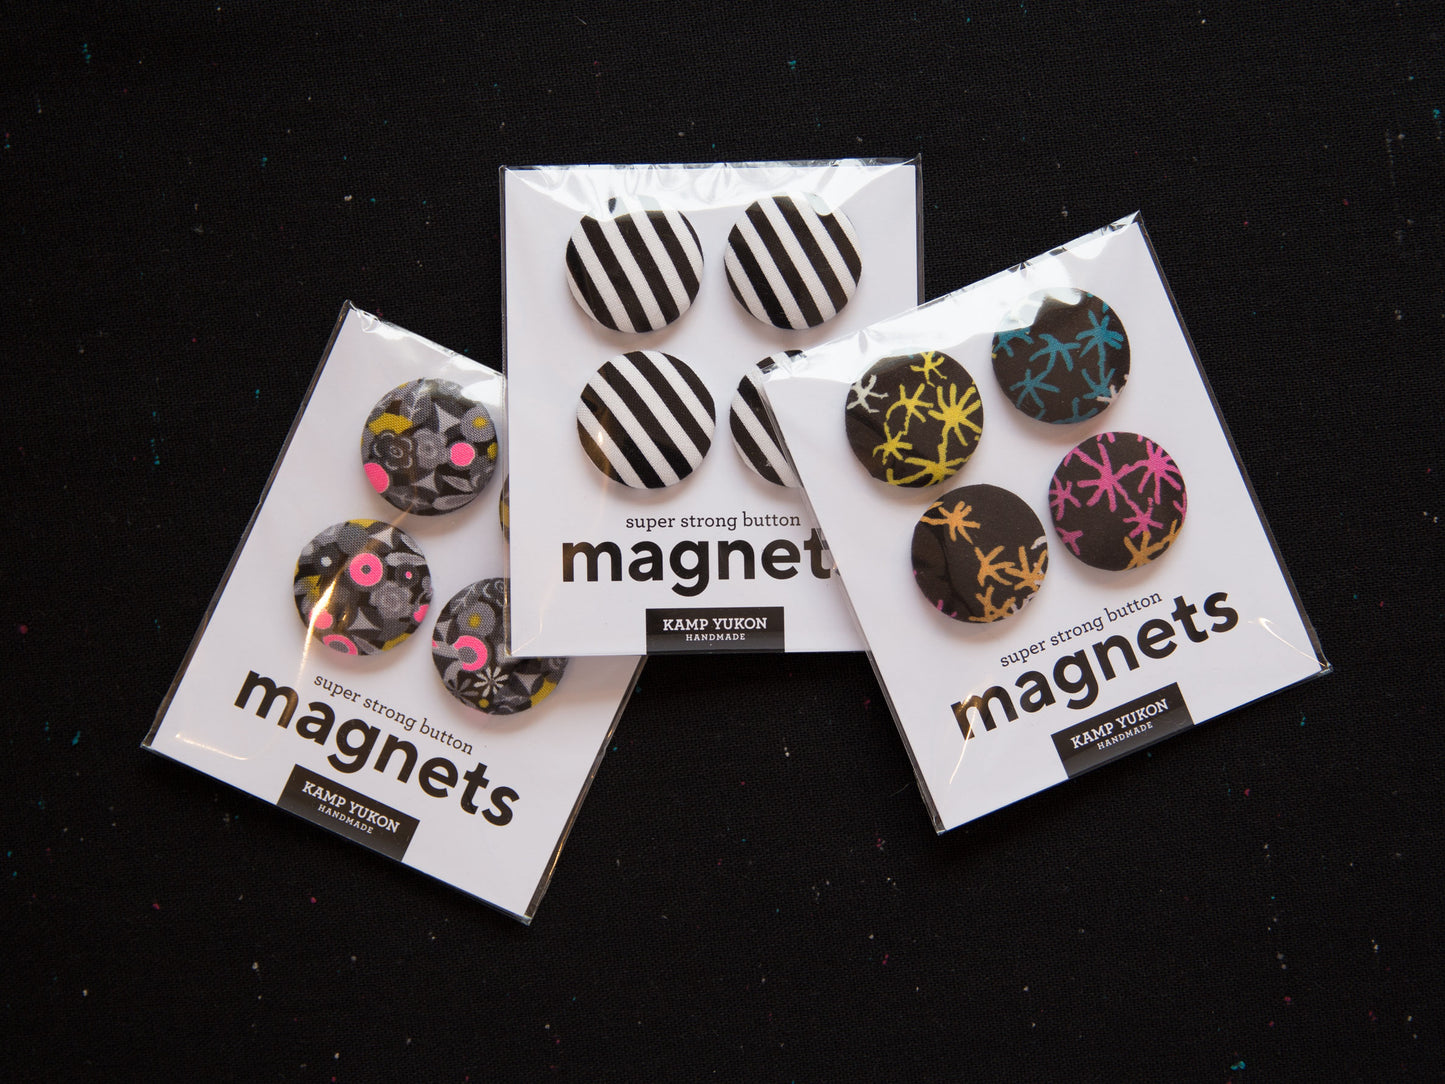 Magnets - Sparks